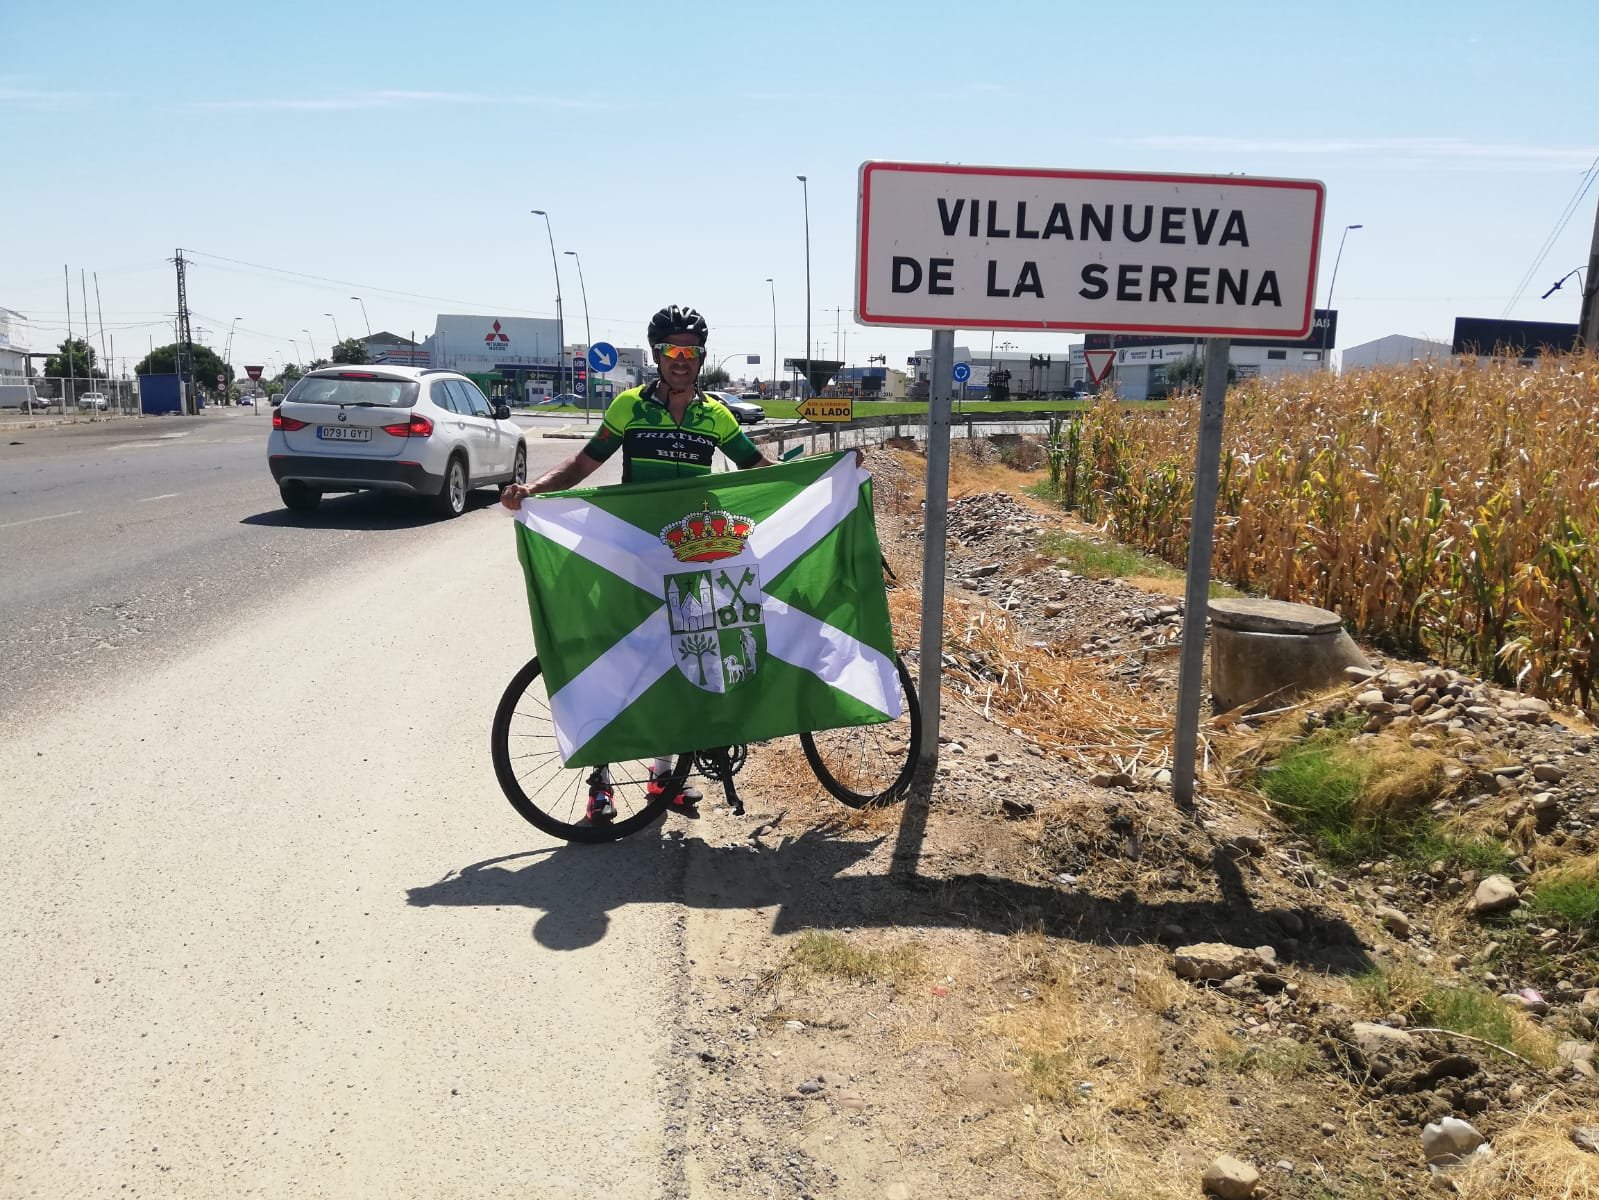 El reto solidario de Santiago de Compostela a Nueva Carteya protagonizado por Antonio Estévez junto a Virginia Urbano alcanza su quinto día éxitosamente.